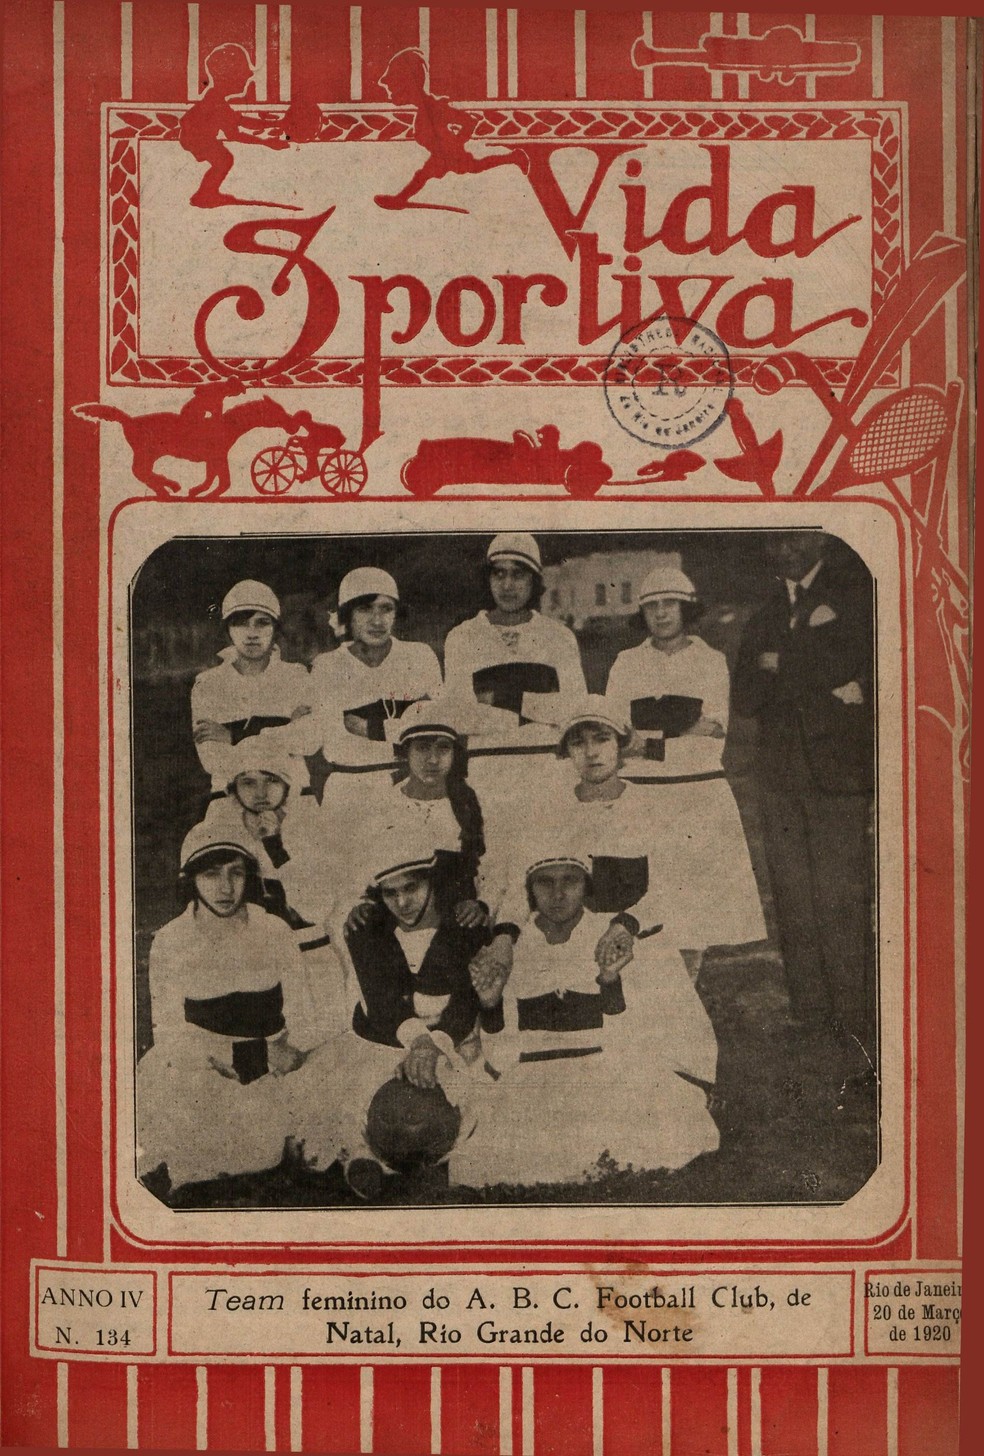 Capa da revista Vida Sportiva em 1920 — Foto: Reprodução Futebol feminino no Brasil/Biblioteca Nacional